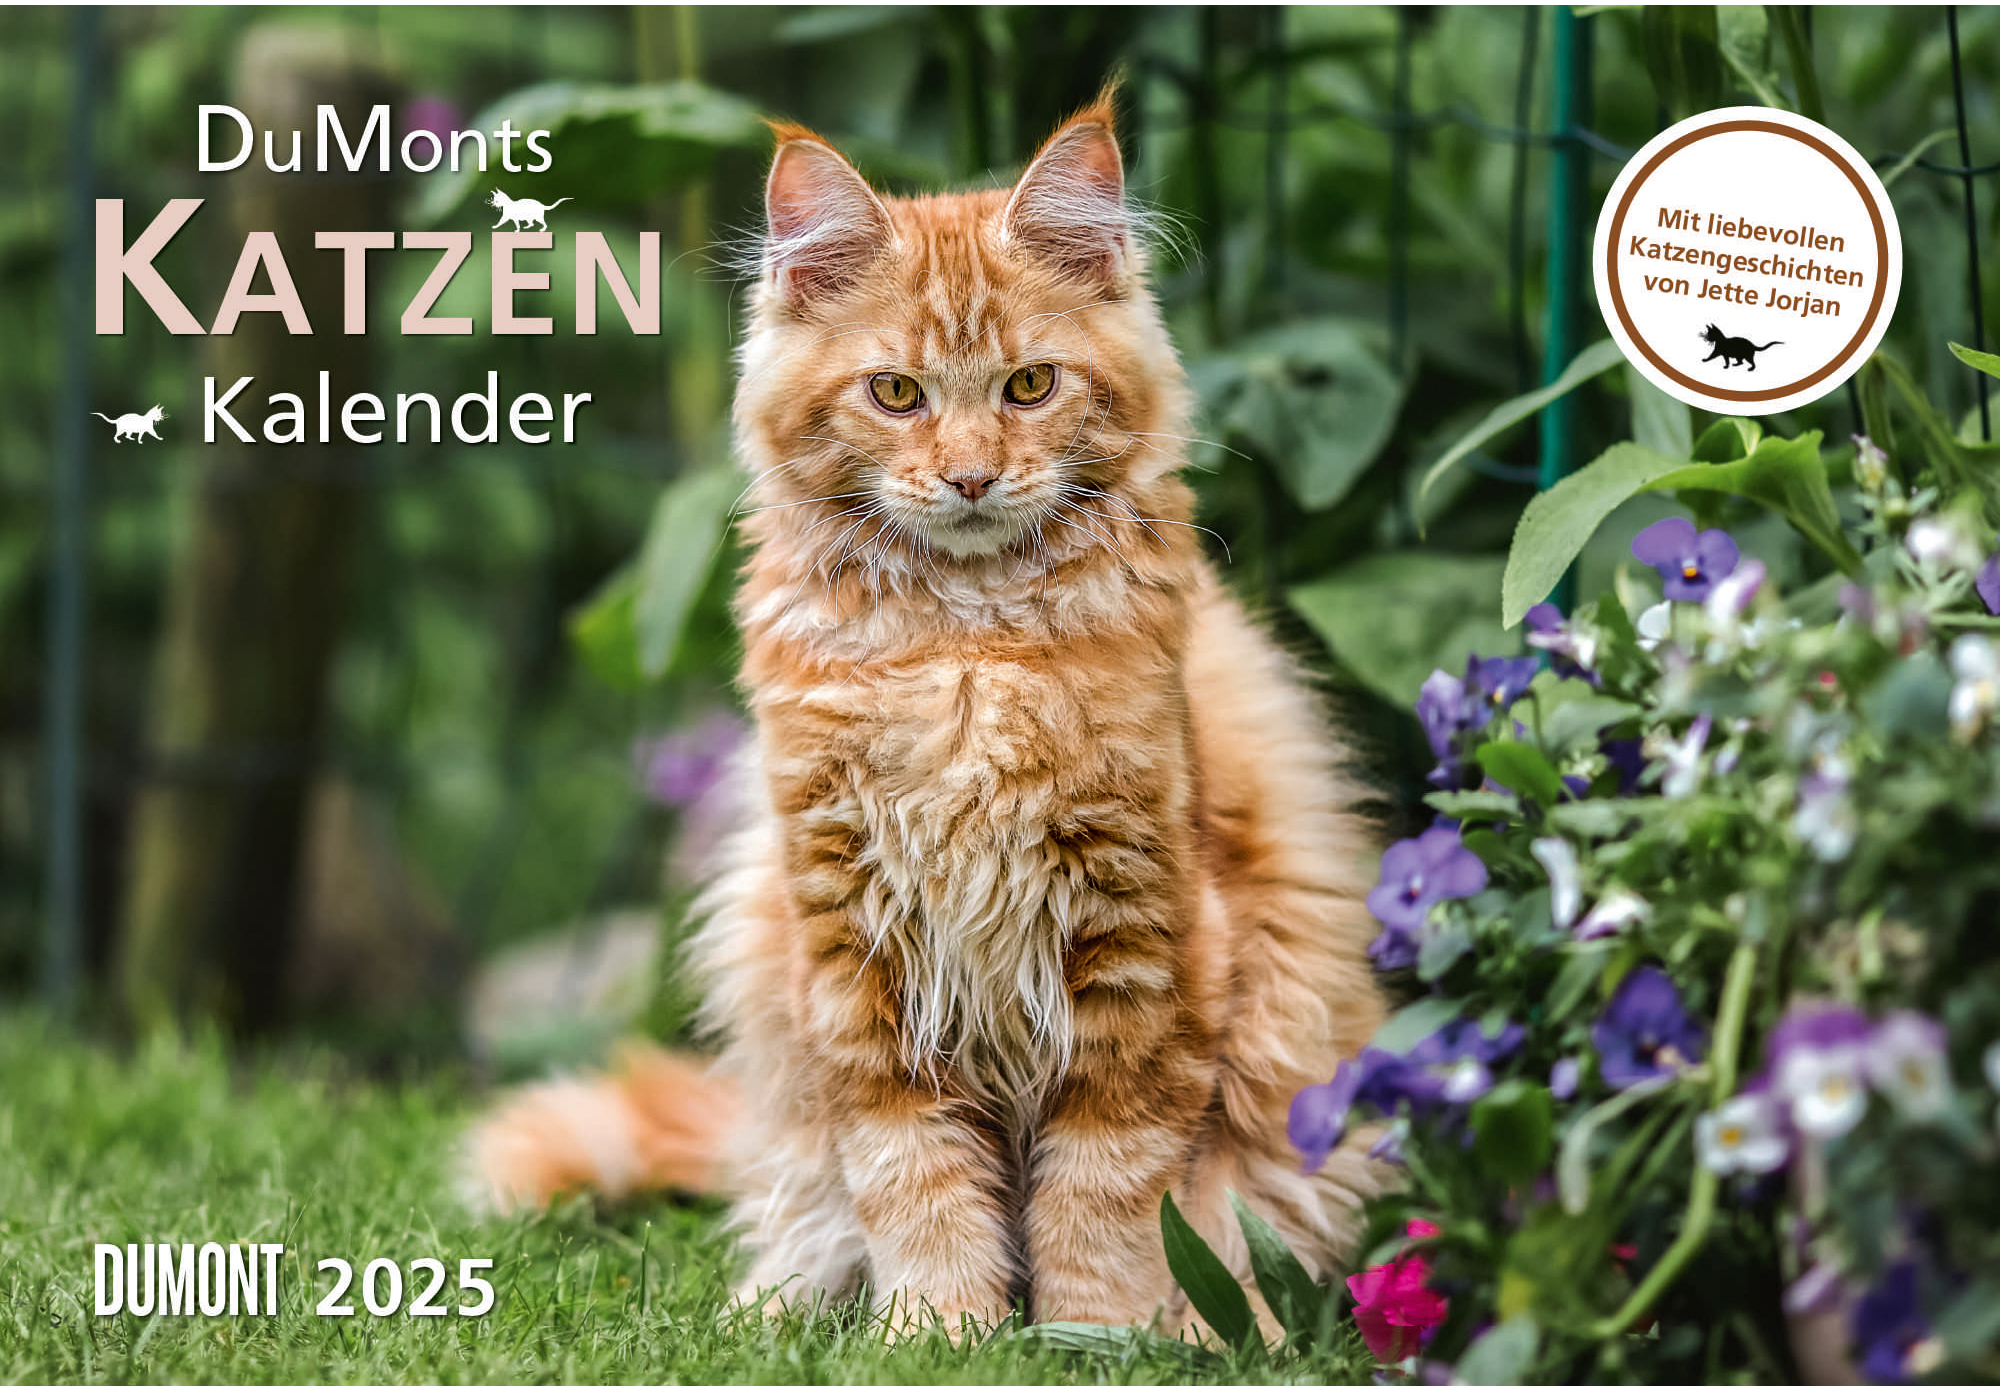 DUMONT Calendrier 2025 205241 Katzen DE 42x29cm